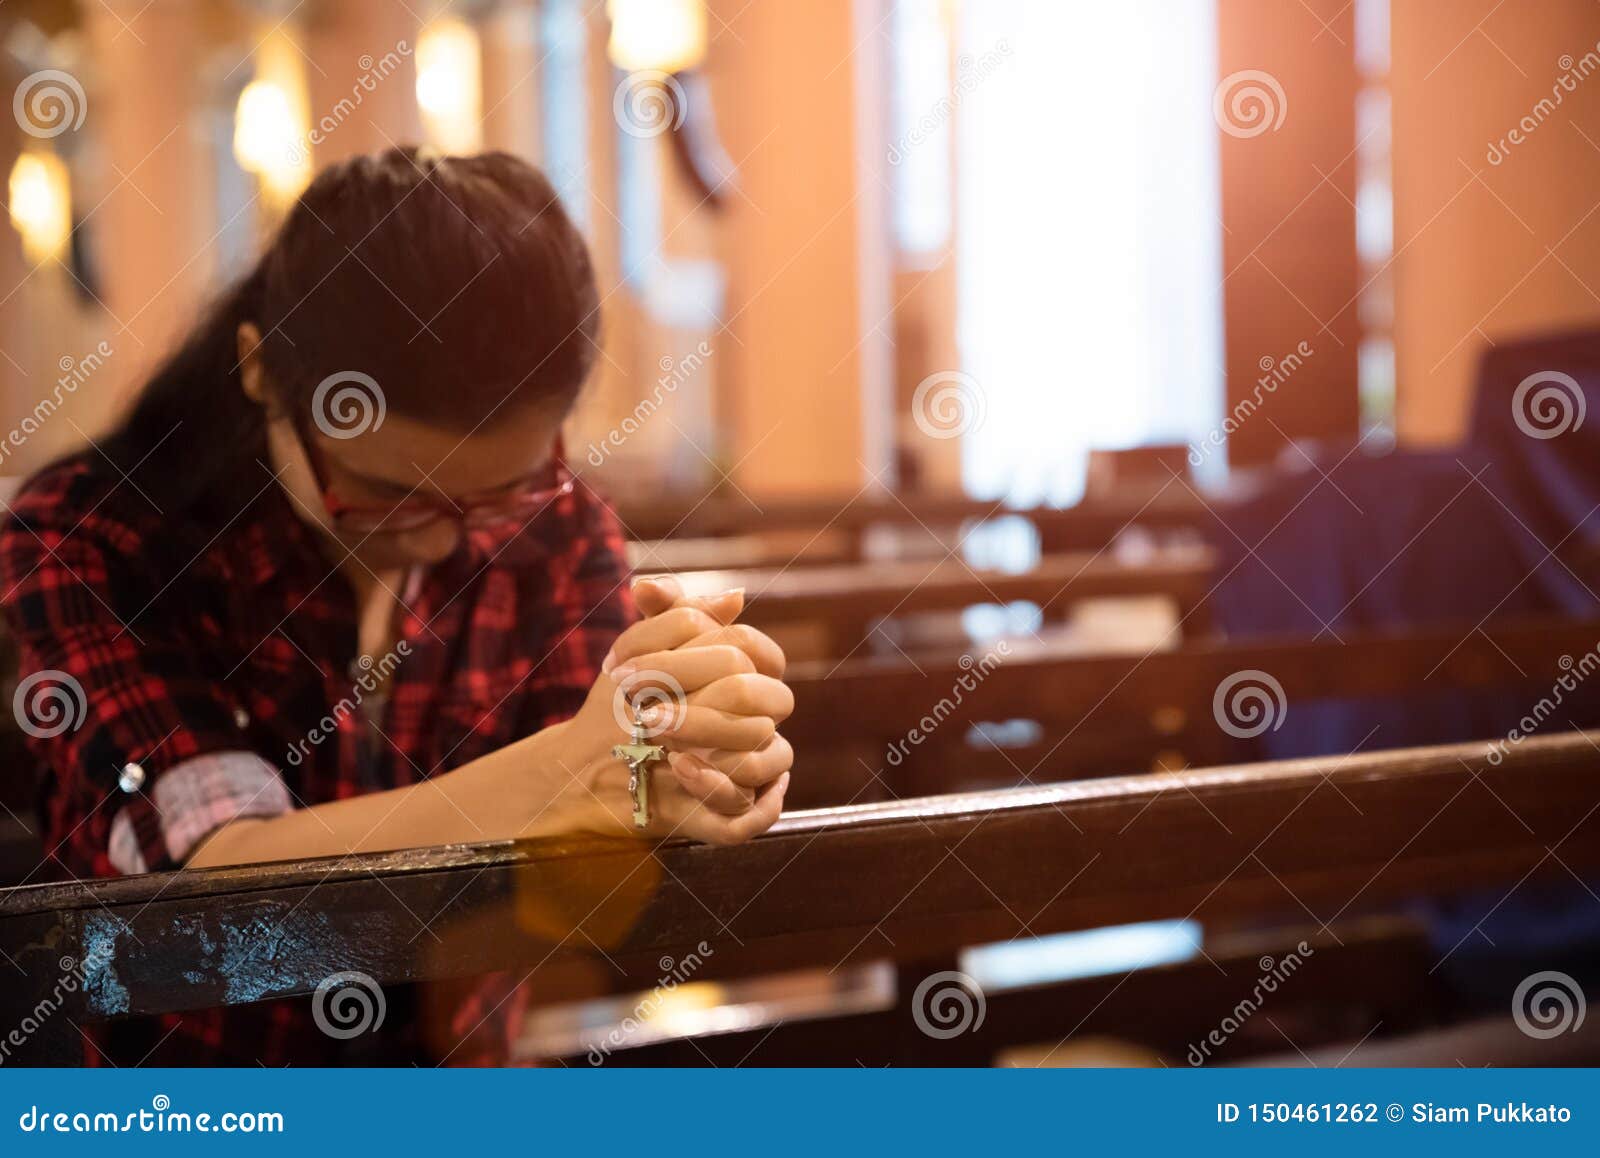 在教堂祈祷的女人 库存照片. 图片 包括有 宽容, 钉书匠, 耶稣, 请求, 现有量, 里面, 女性, 白种人 - 172391972